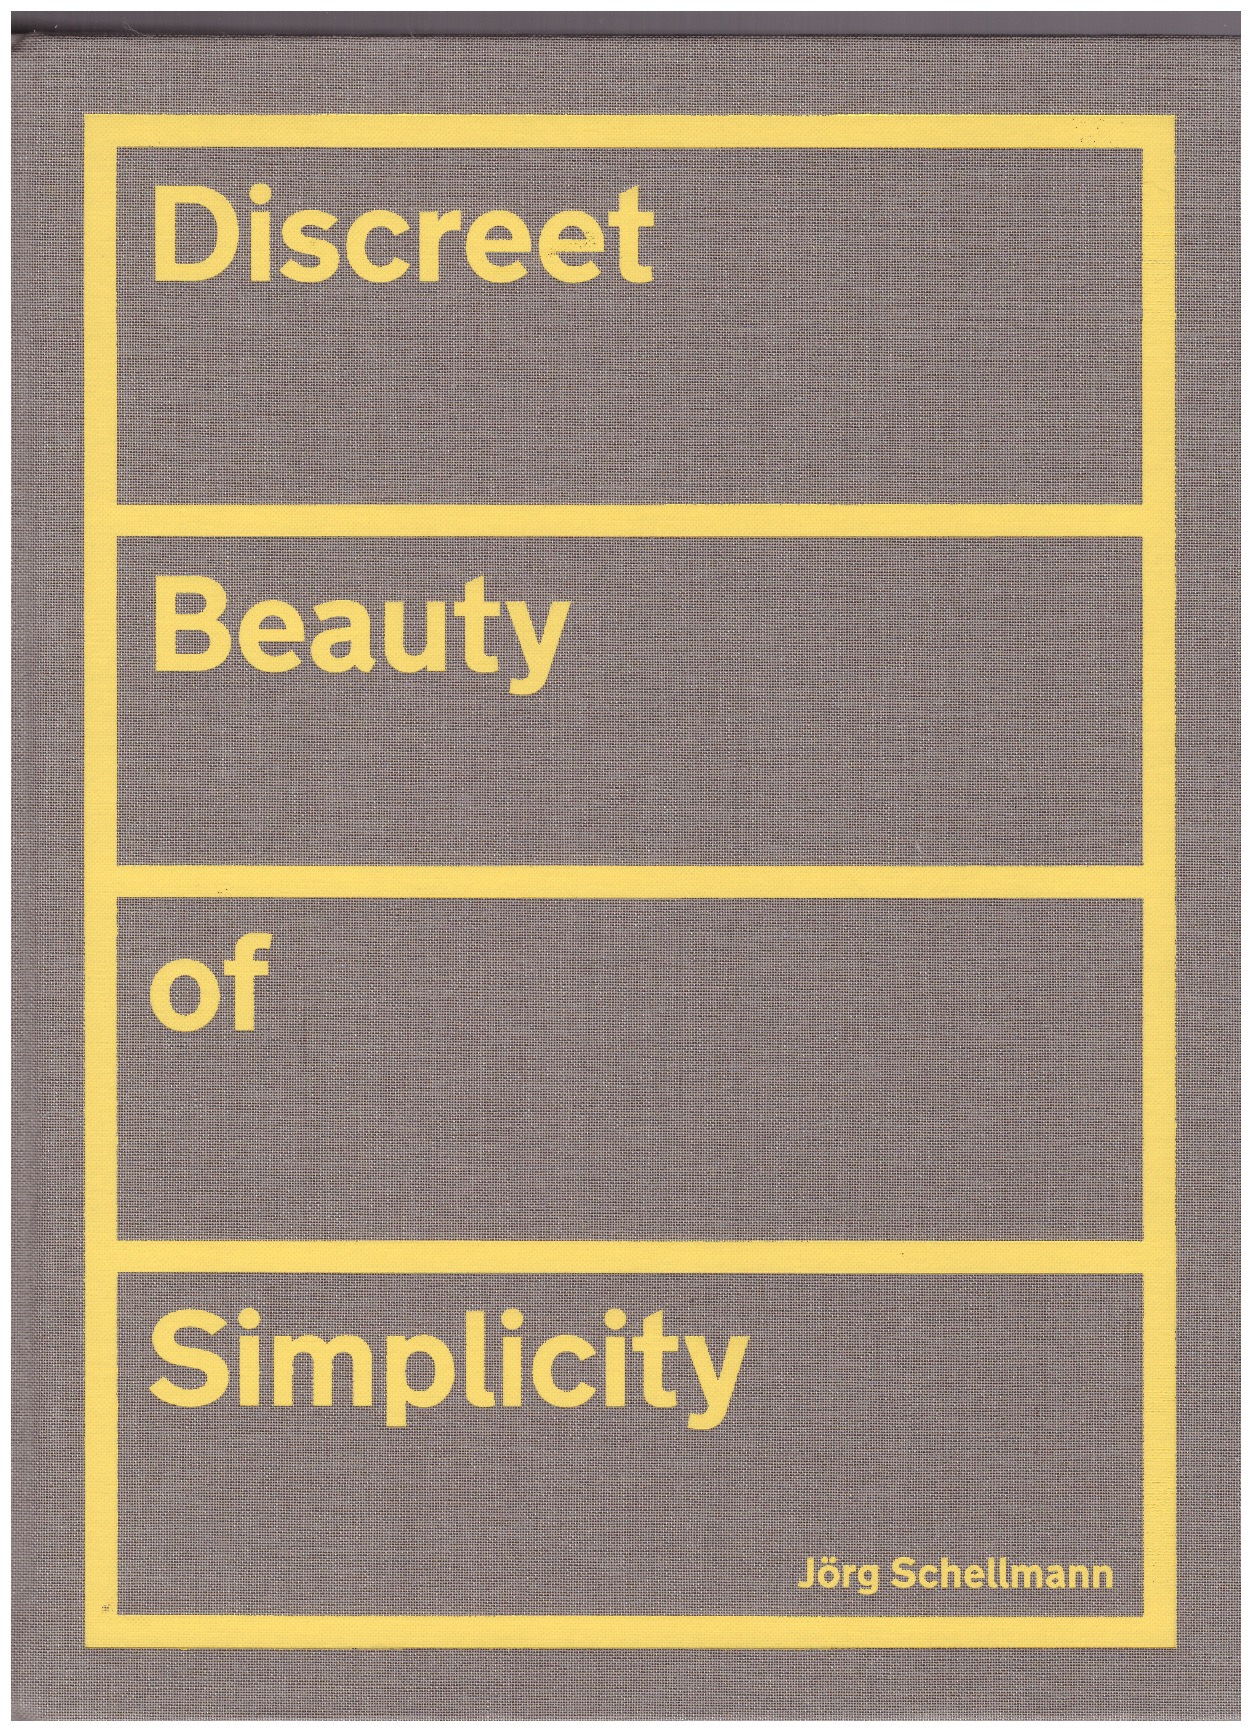 SCHELLMANN, Jörg - Discreet Beauty of Simplicity